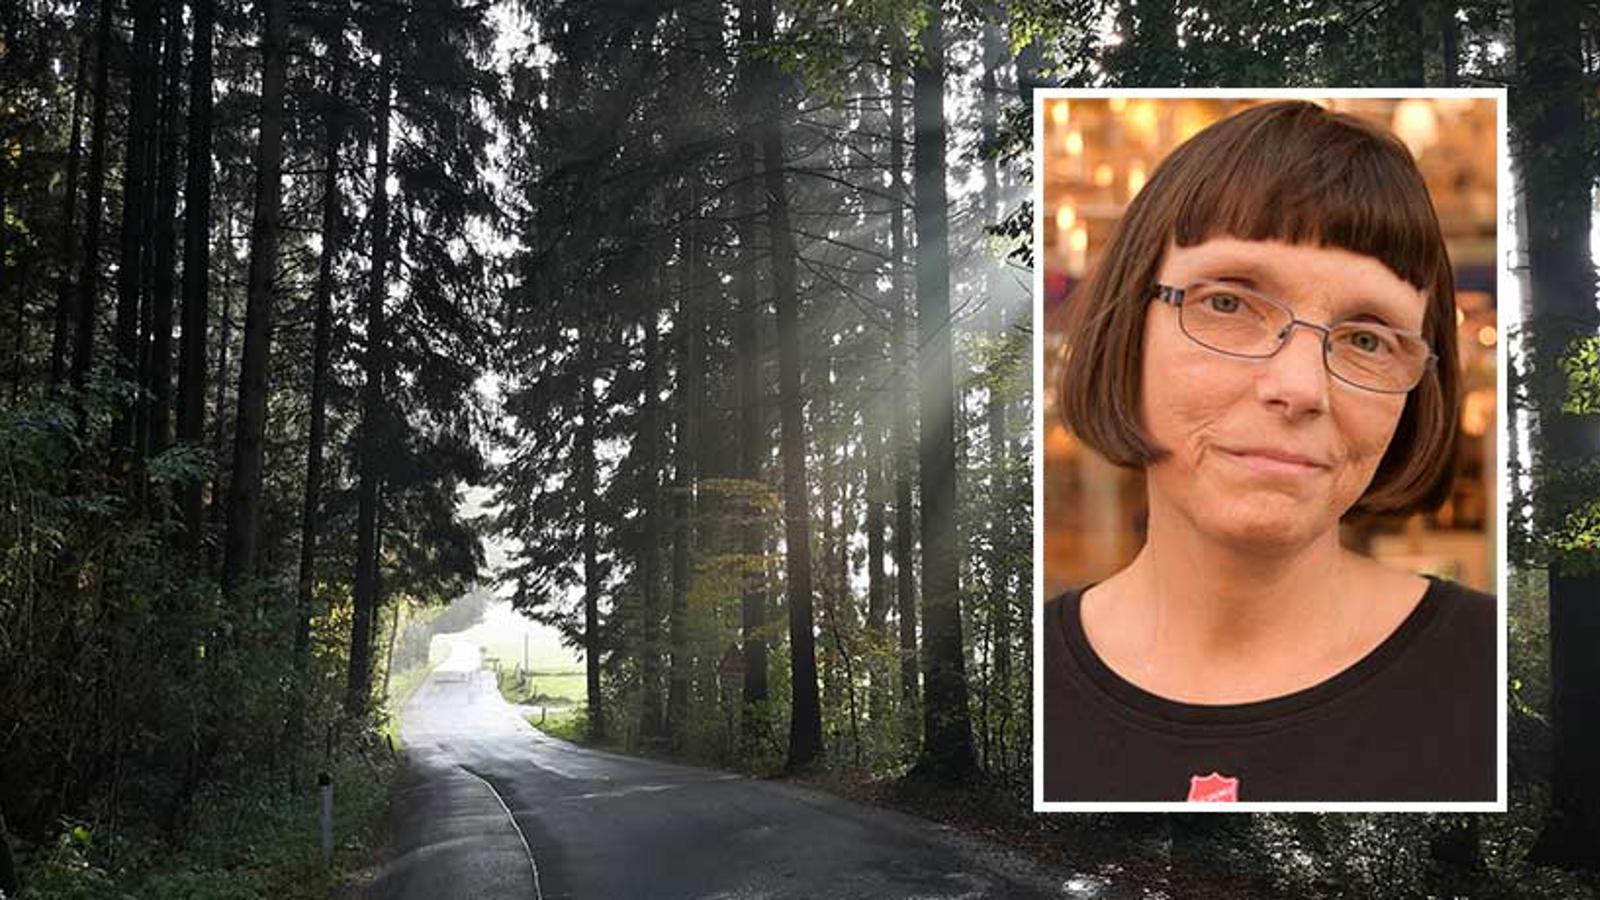 Till vänster: En asfalterad väg med träd runtom. Till höger om vägen kikar solstrålar fram genom träden. Till höger: Porträttbild av Chatarina Haglund.